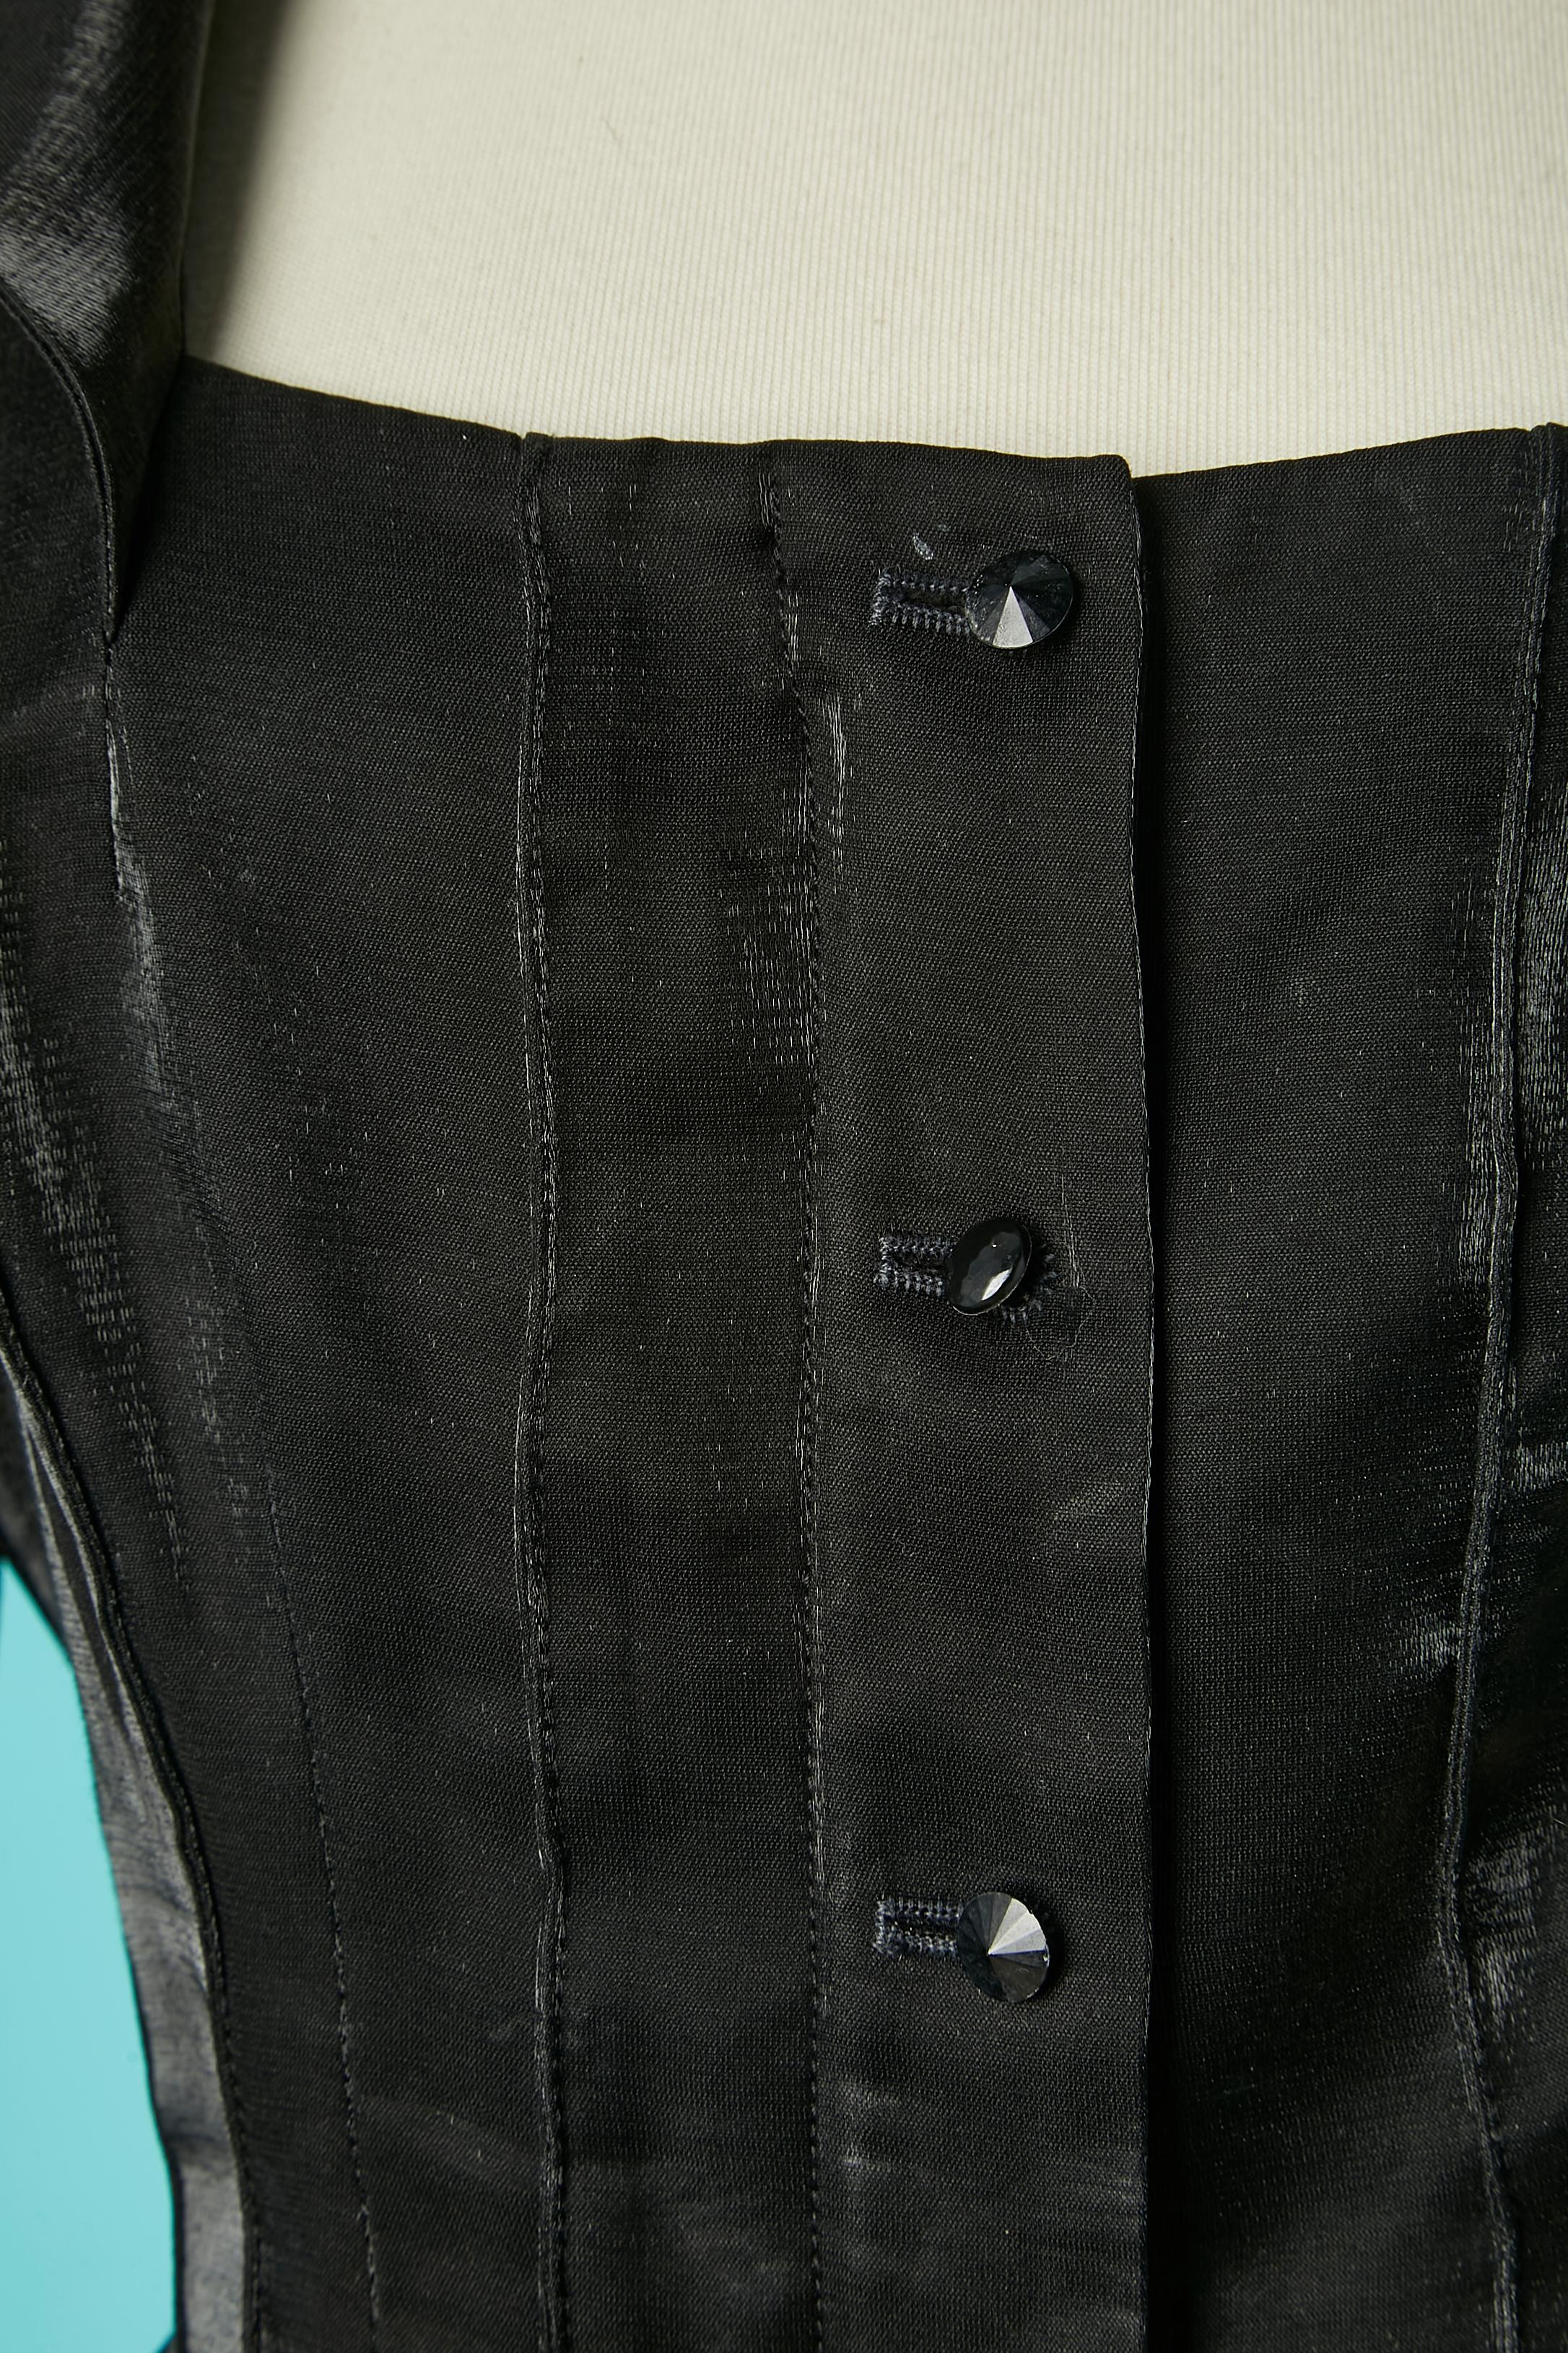 Jupe de soirée noire brillante avec jupe asymétrique. Composition du tissu principal : 91% polyester, 9% rayonne. 
Pad d'épaule. Fermeture à glissière cachée sur le milieu du devant et patte de boutonnage sur le dessus. Volants sur le bord des